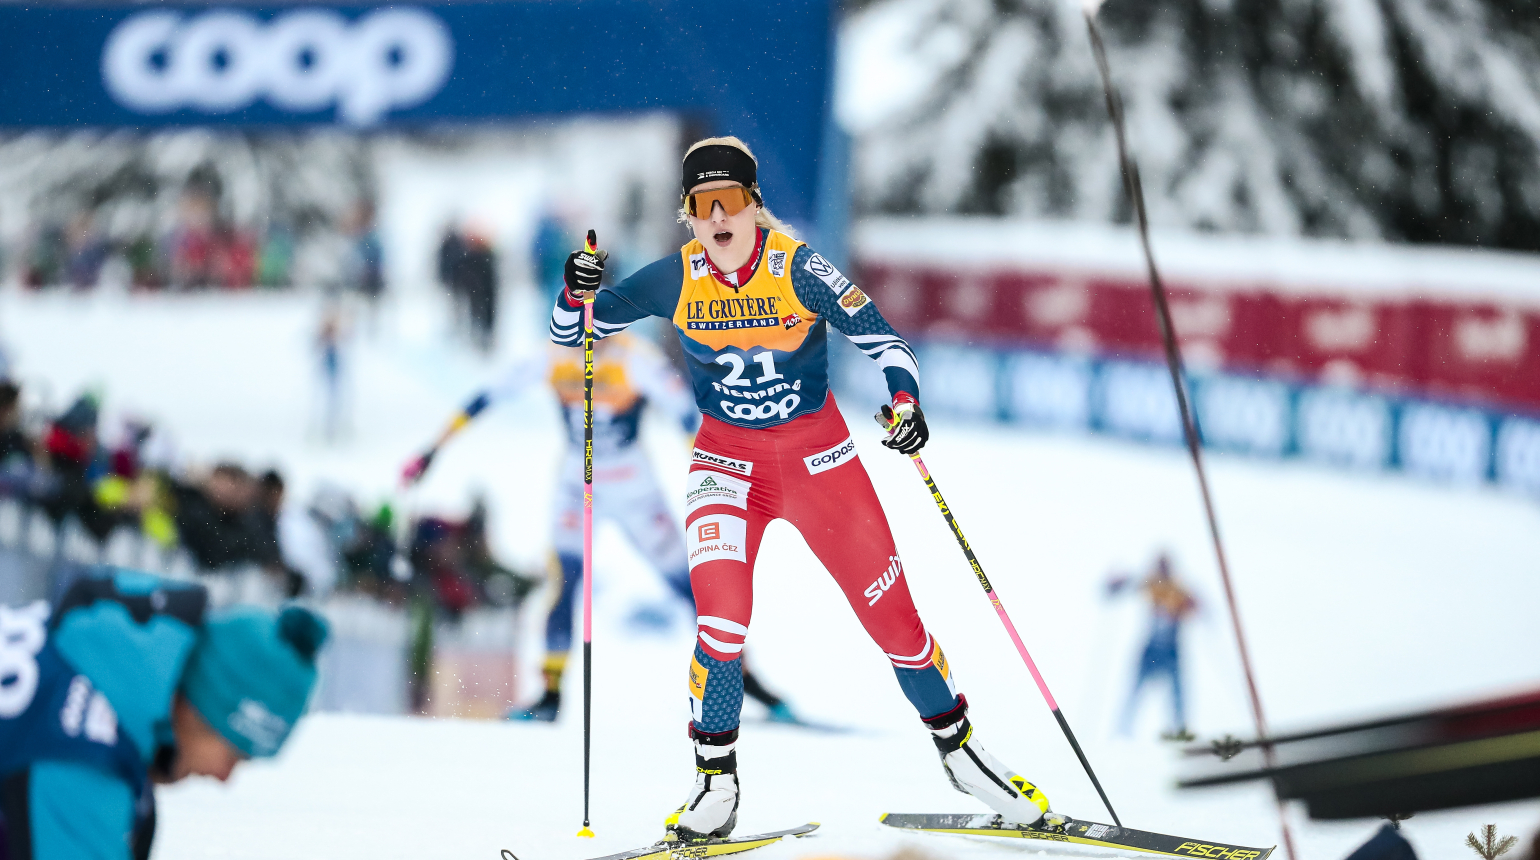 Bájný Alpe Cermis uzavřel Tour de Ski. Janatová uhájila pozici v Top 20, Fellner těsně za třicítkou